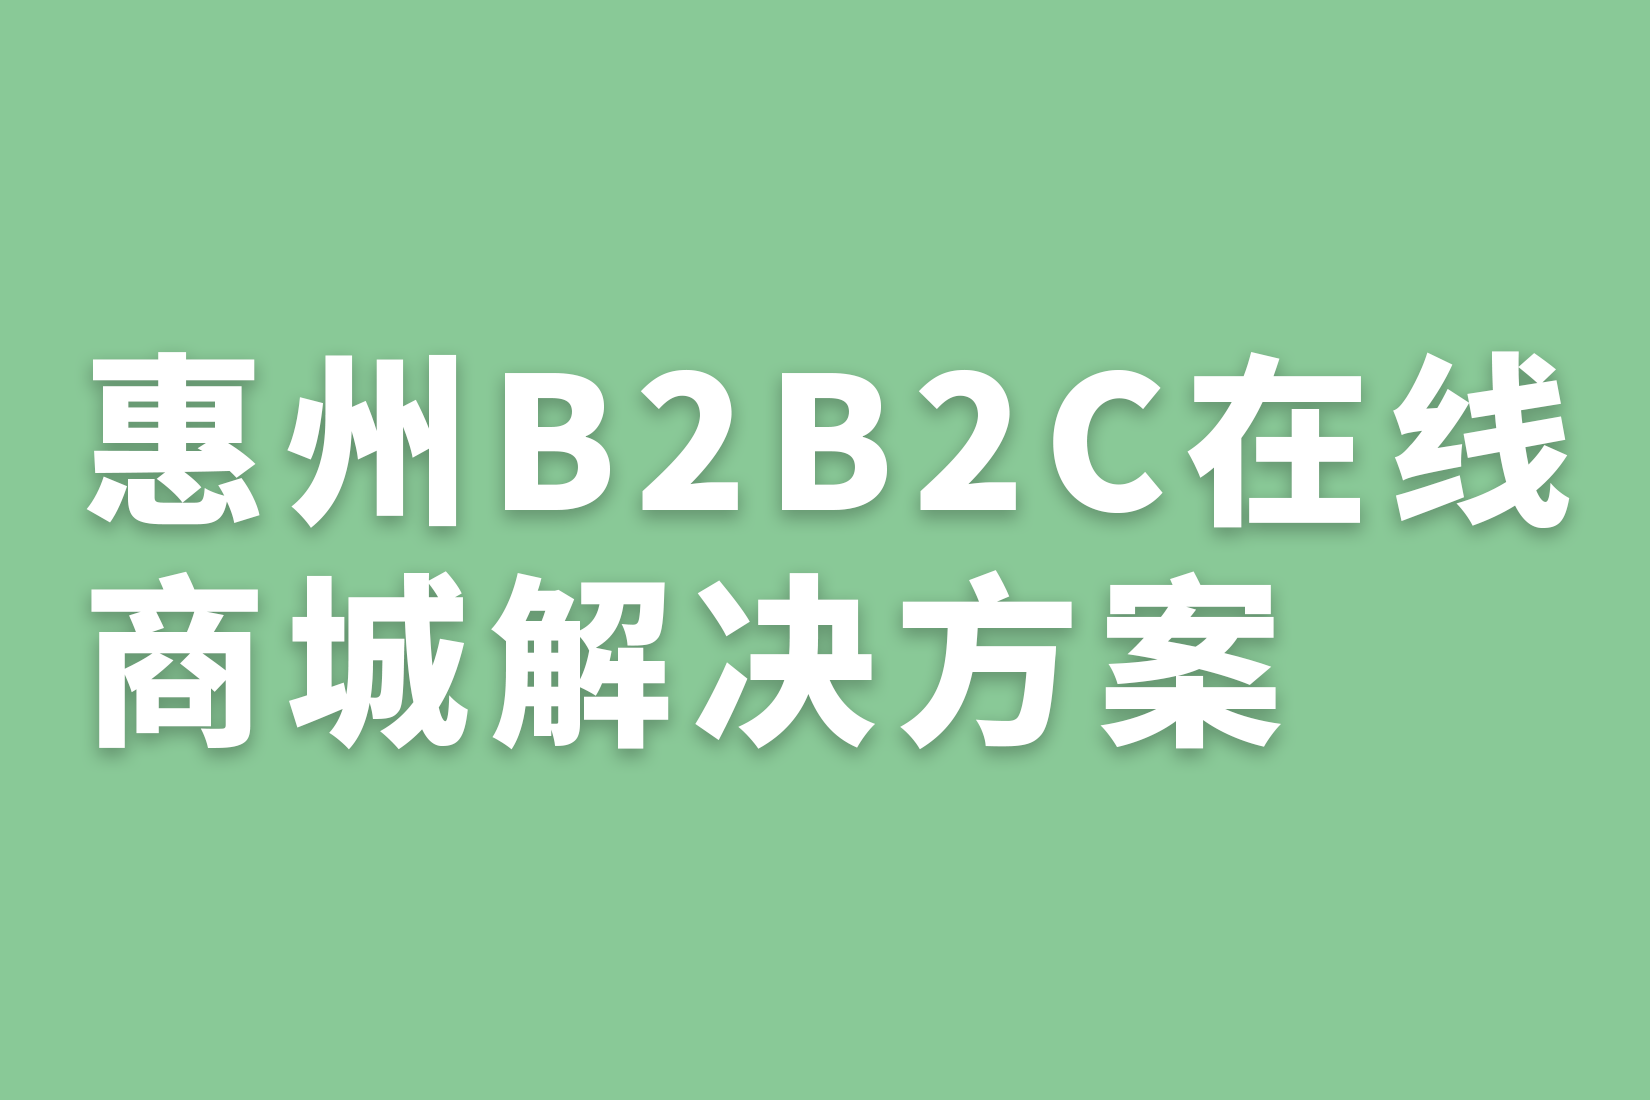 惠州B2B2C在线 商城解决方案